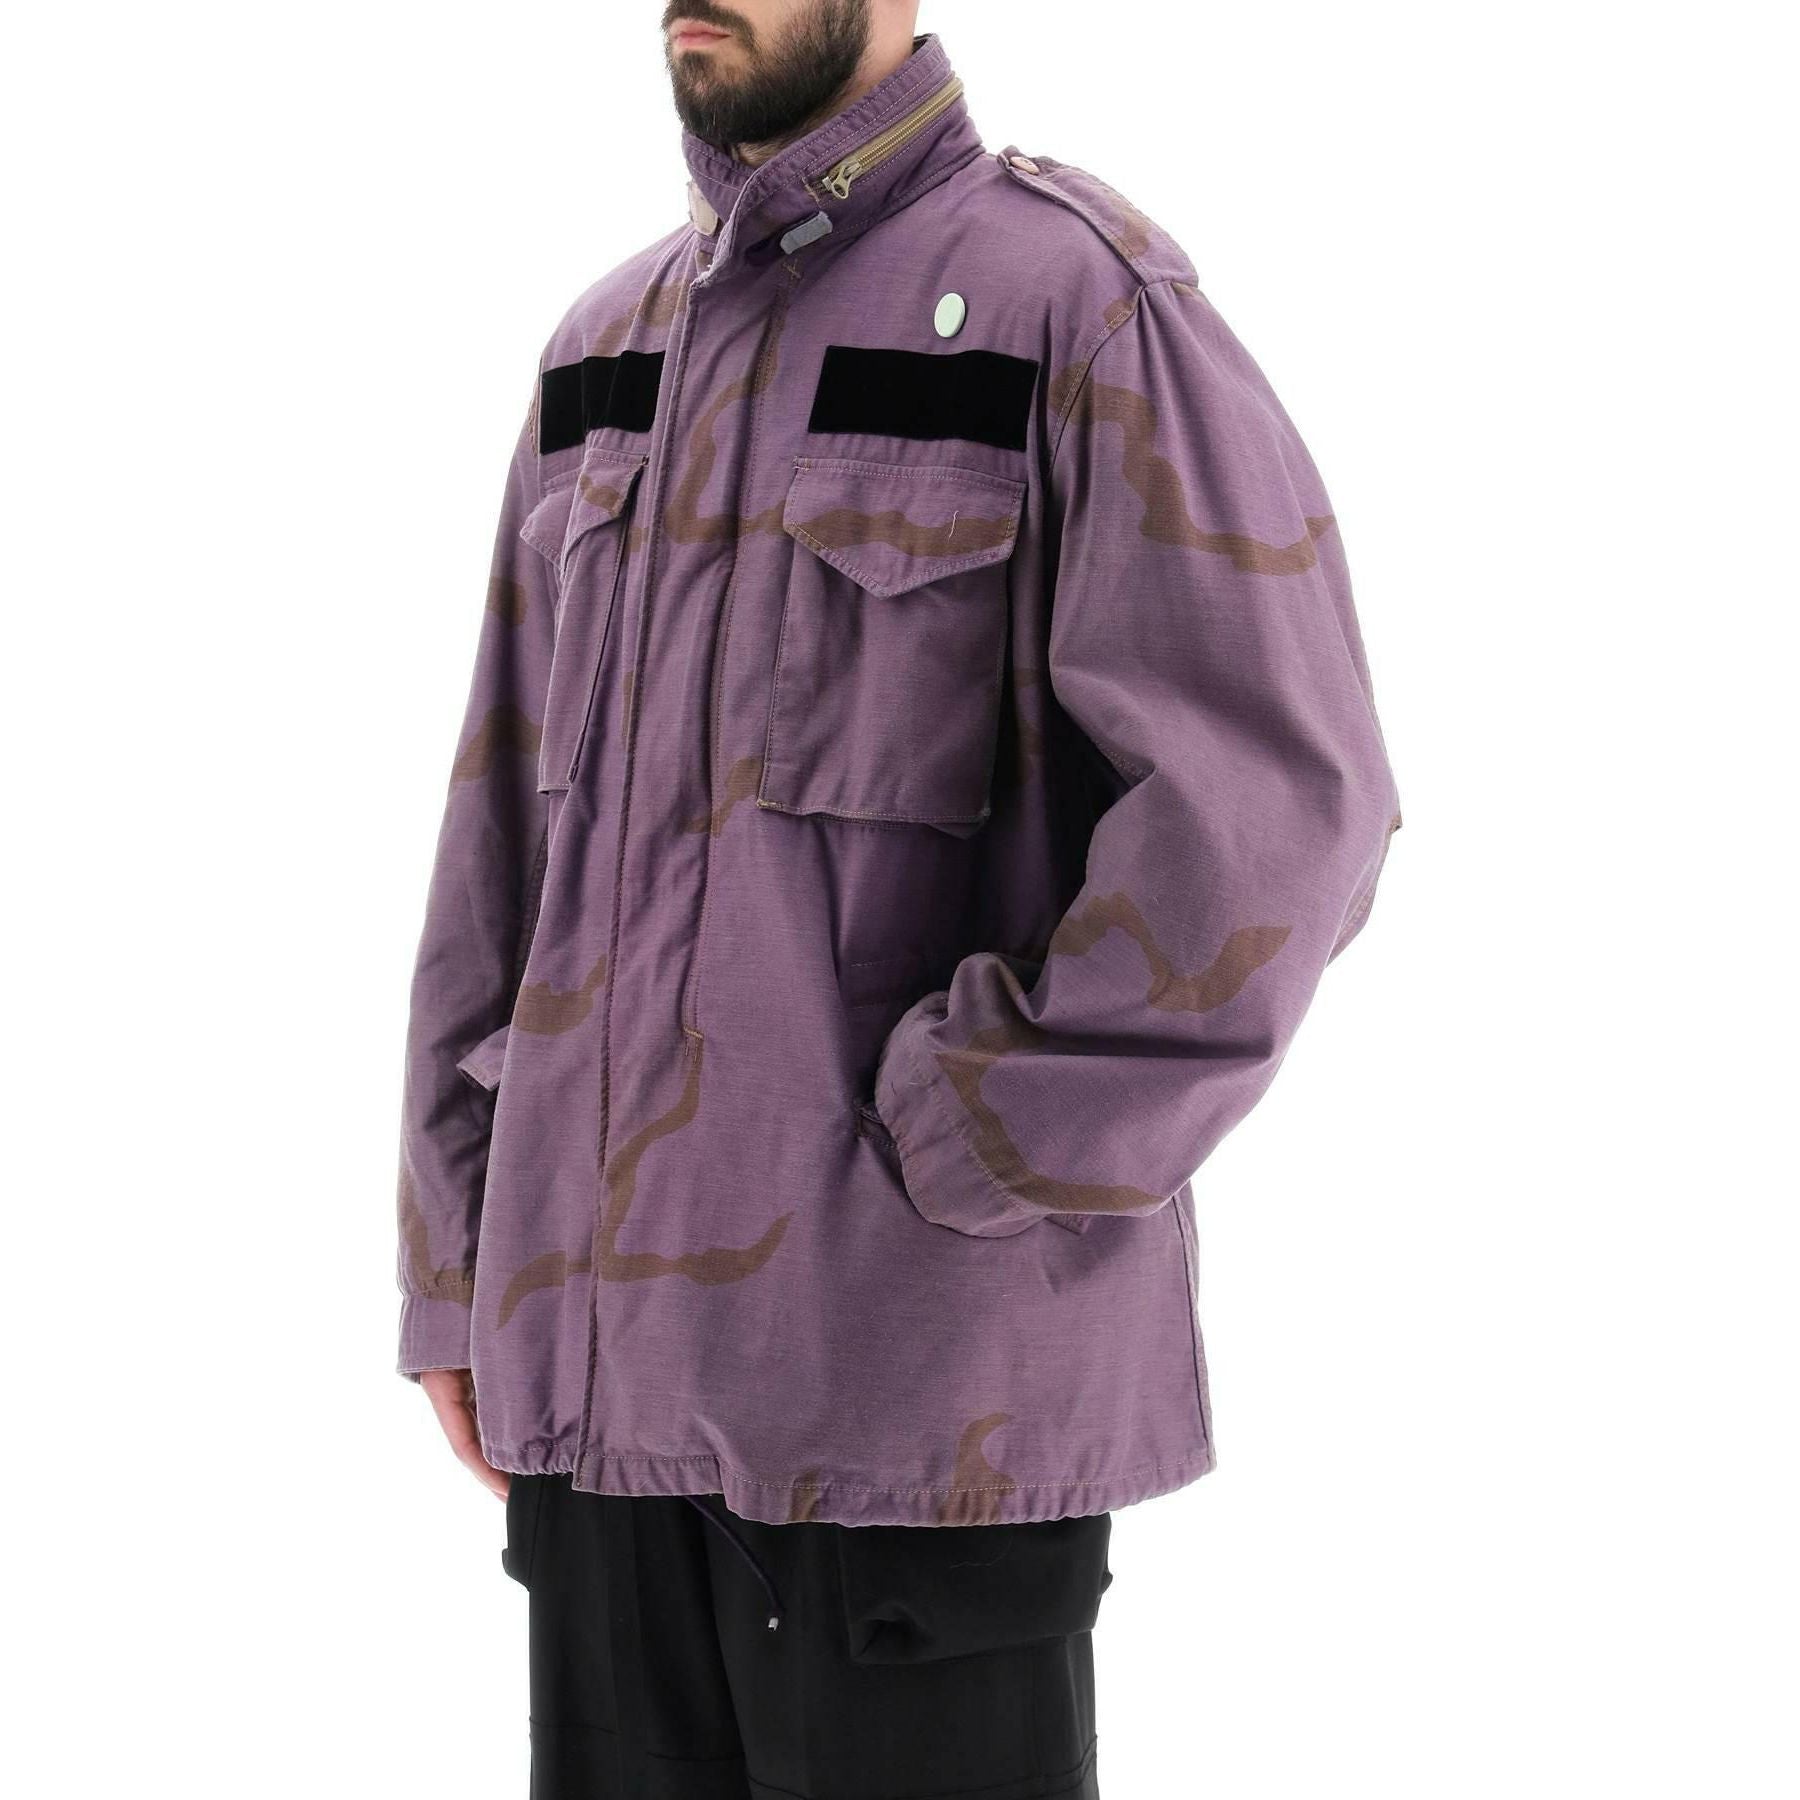 Field Jacket In Cotton With Camouflage Pattern OAMC JOHN JULIA.